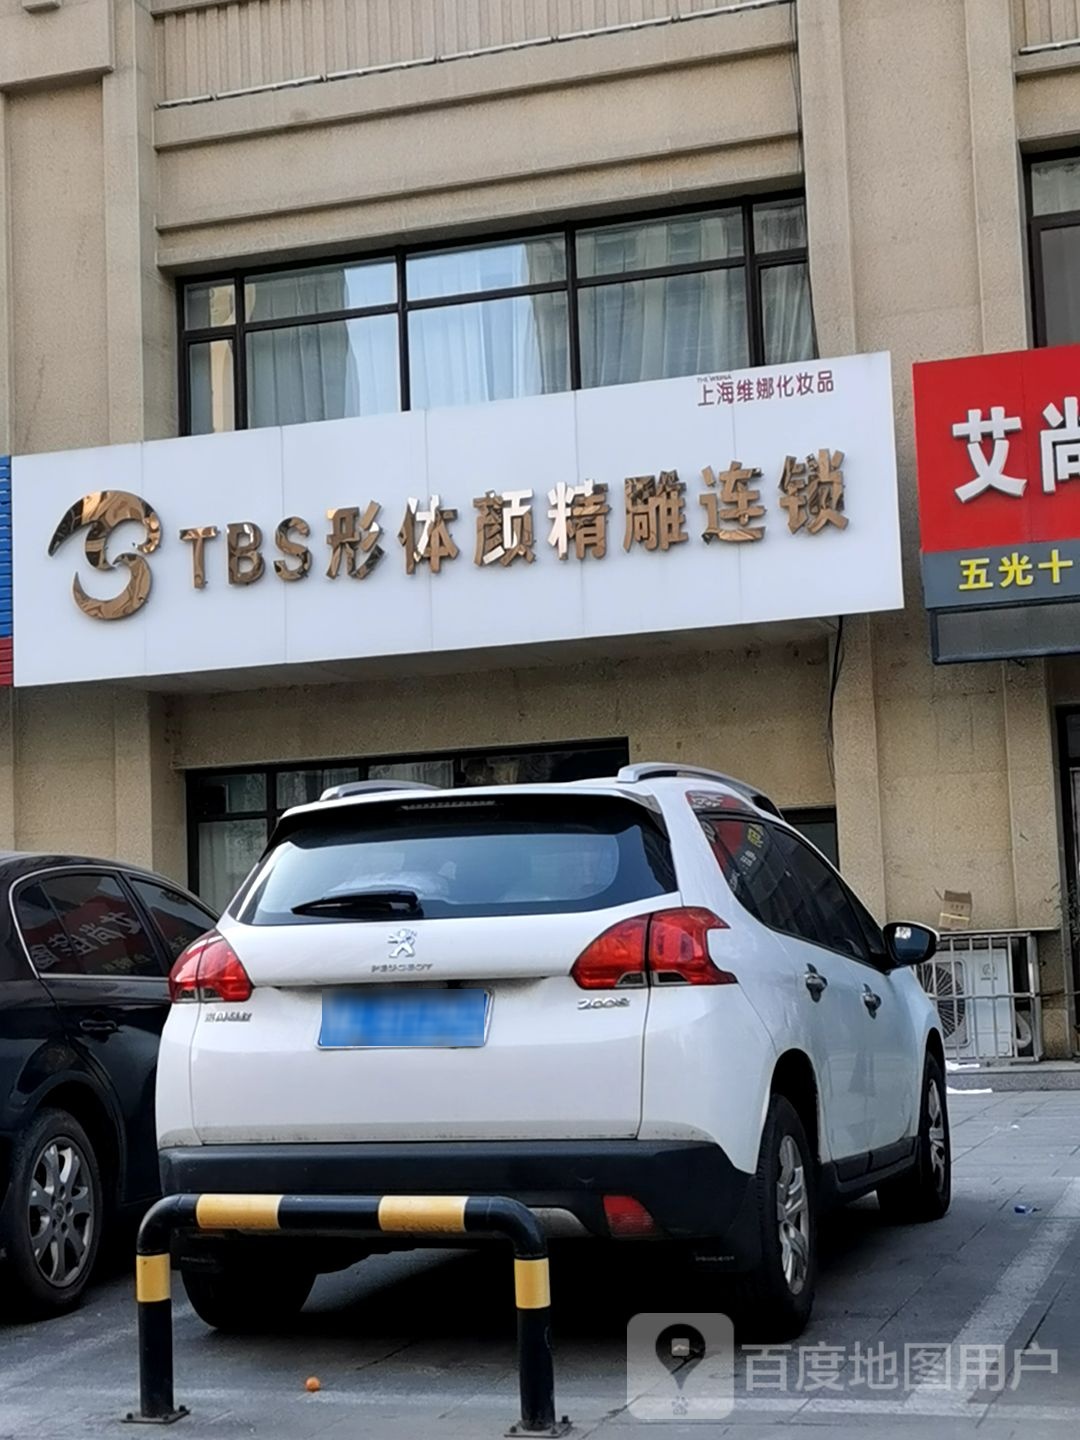 TBS形体颜精雕连锁(五莲店)